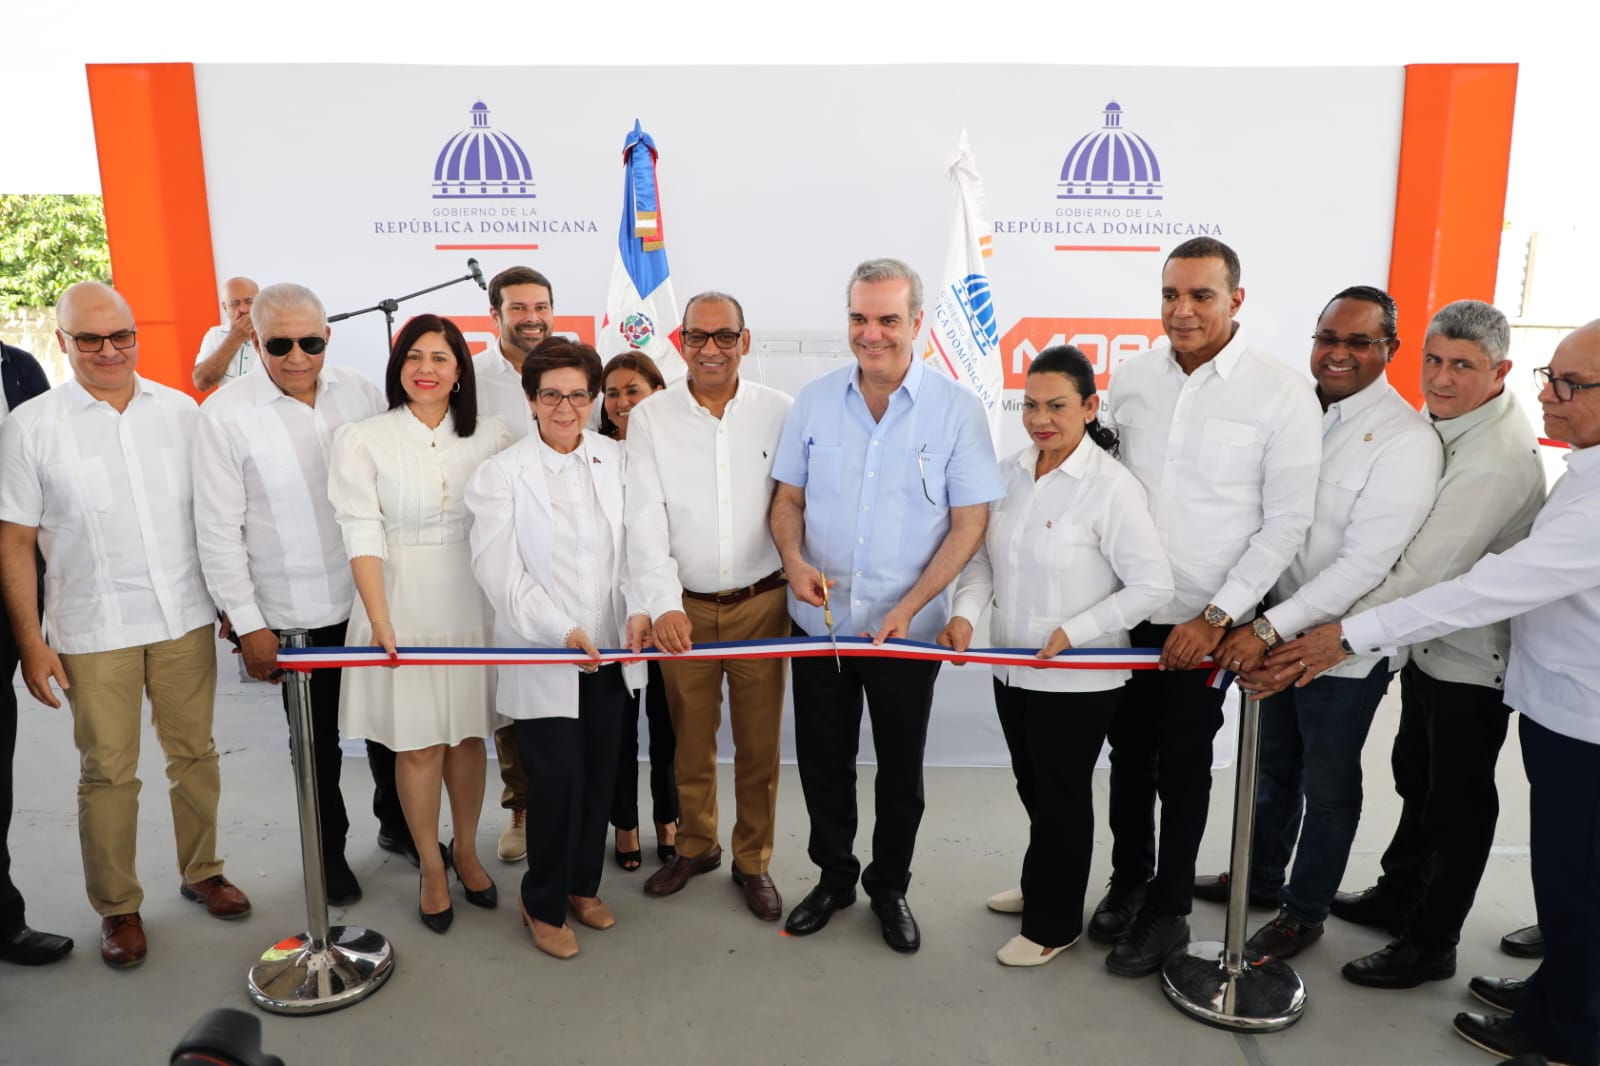 REPÚBLICA DOMINICANA: Presidente Abinader inaugura dos carreteras y 110 apartamentos en Santiago y Moca por más de 2,530 millones de pesos